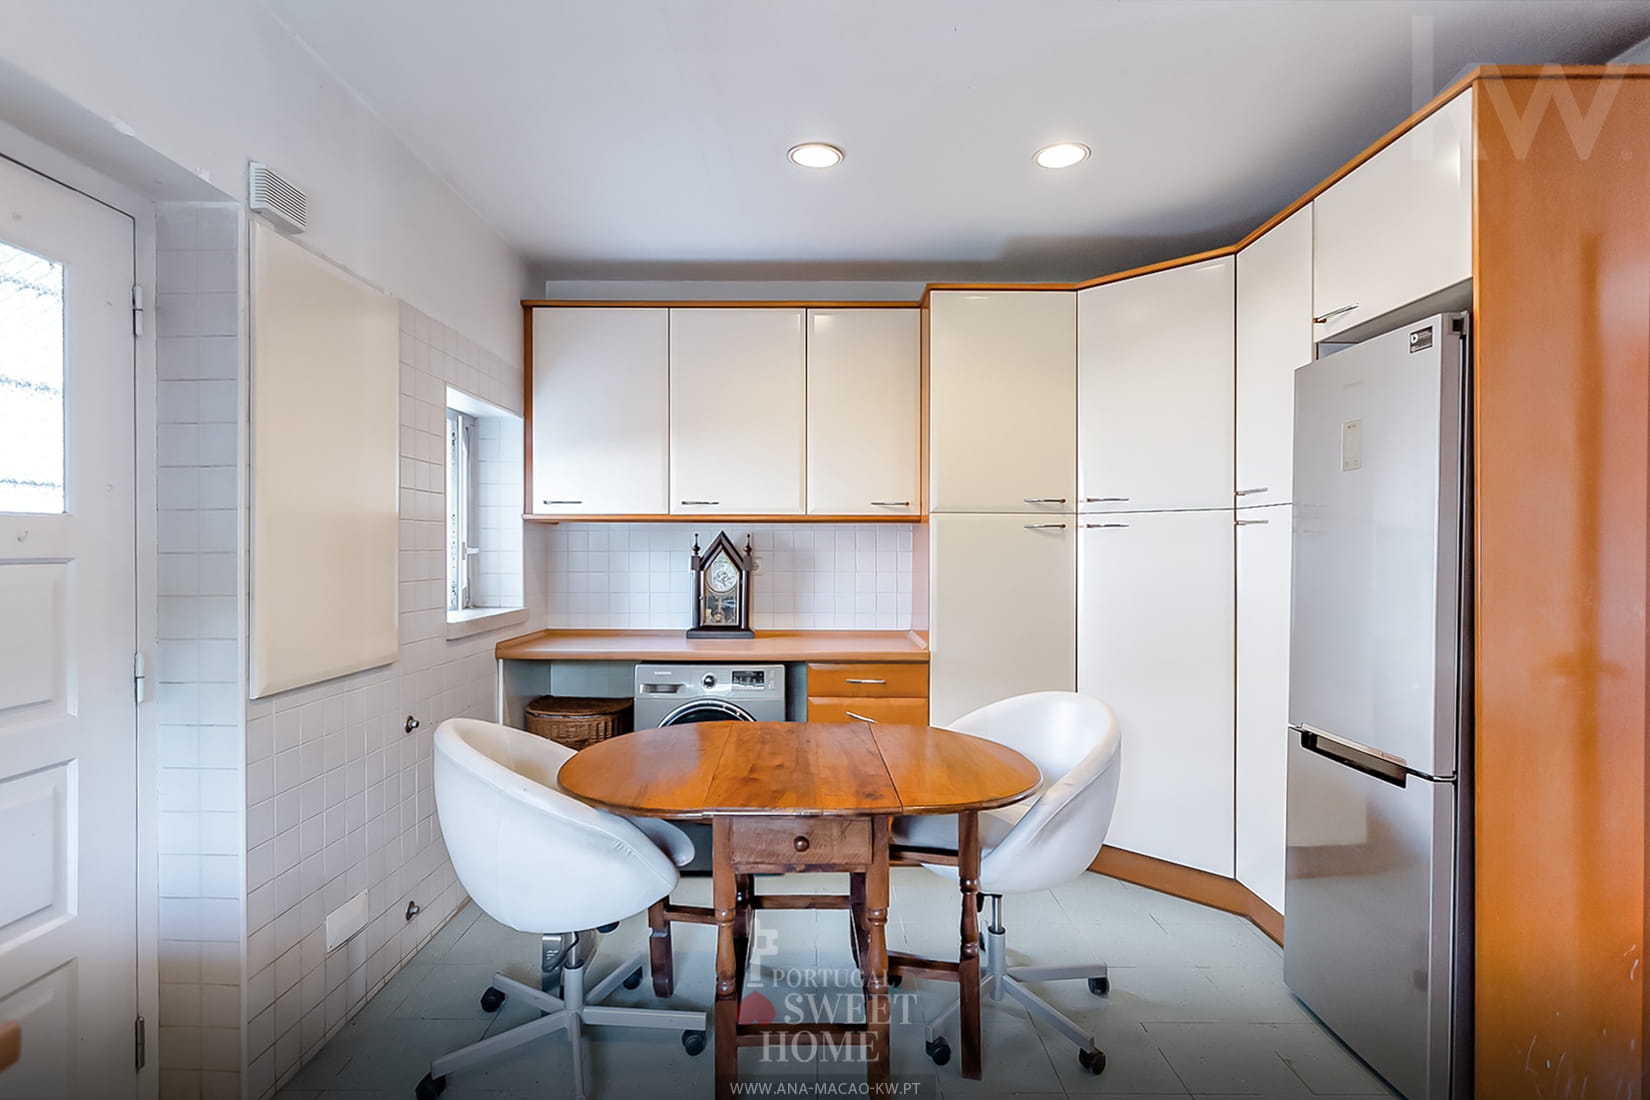 Cozinha (13,6 m²) totalmente equipada